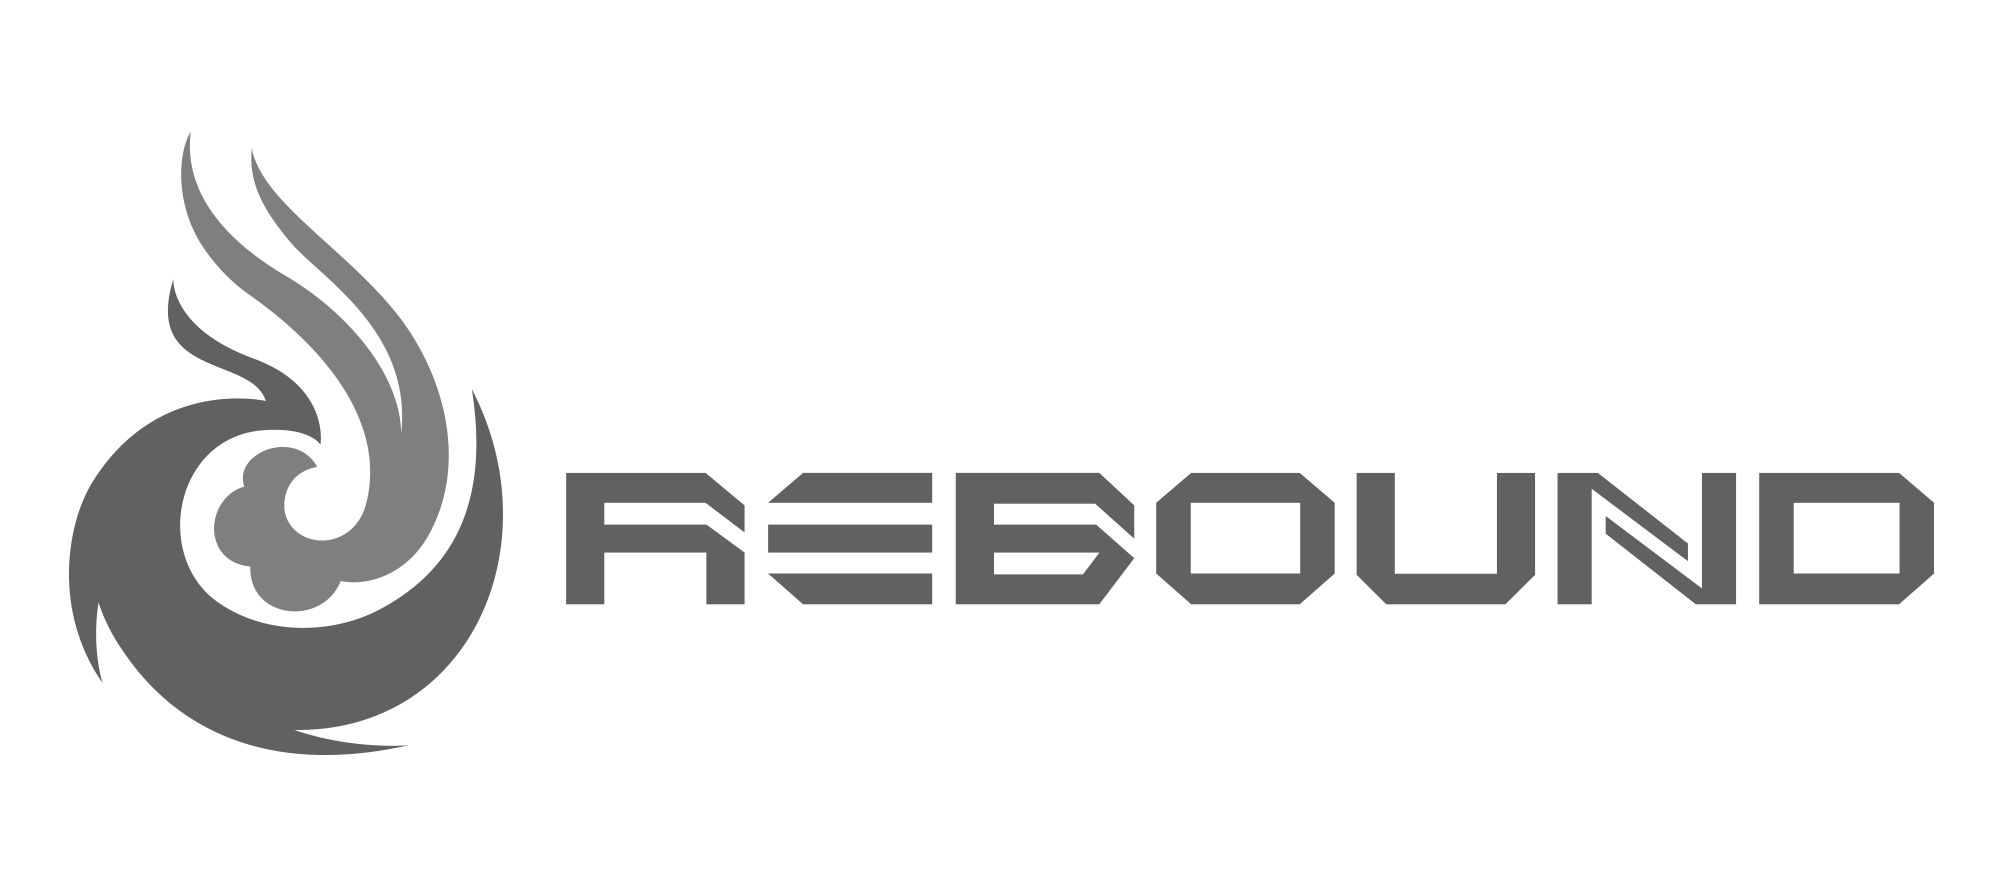 Rebound Logo